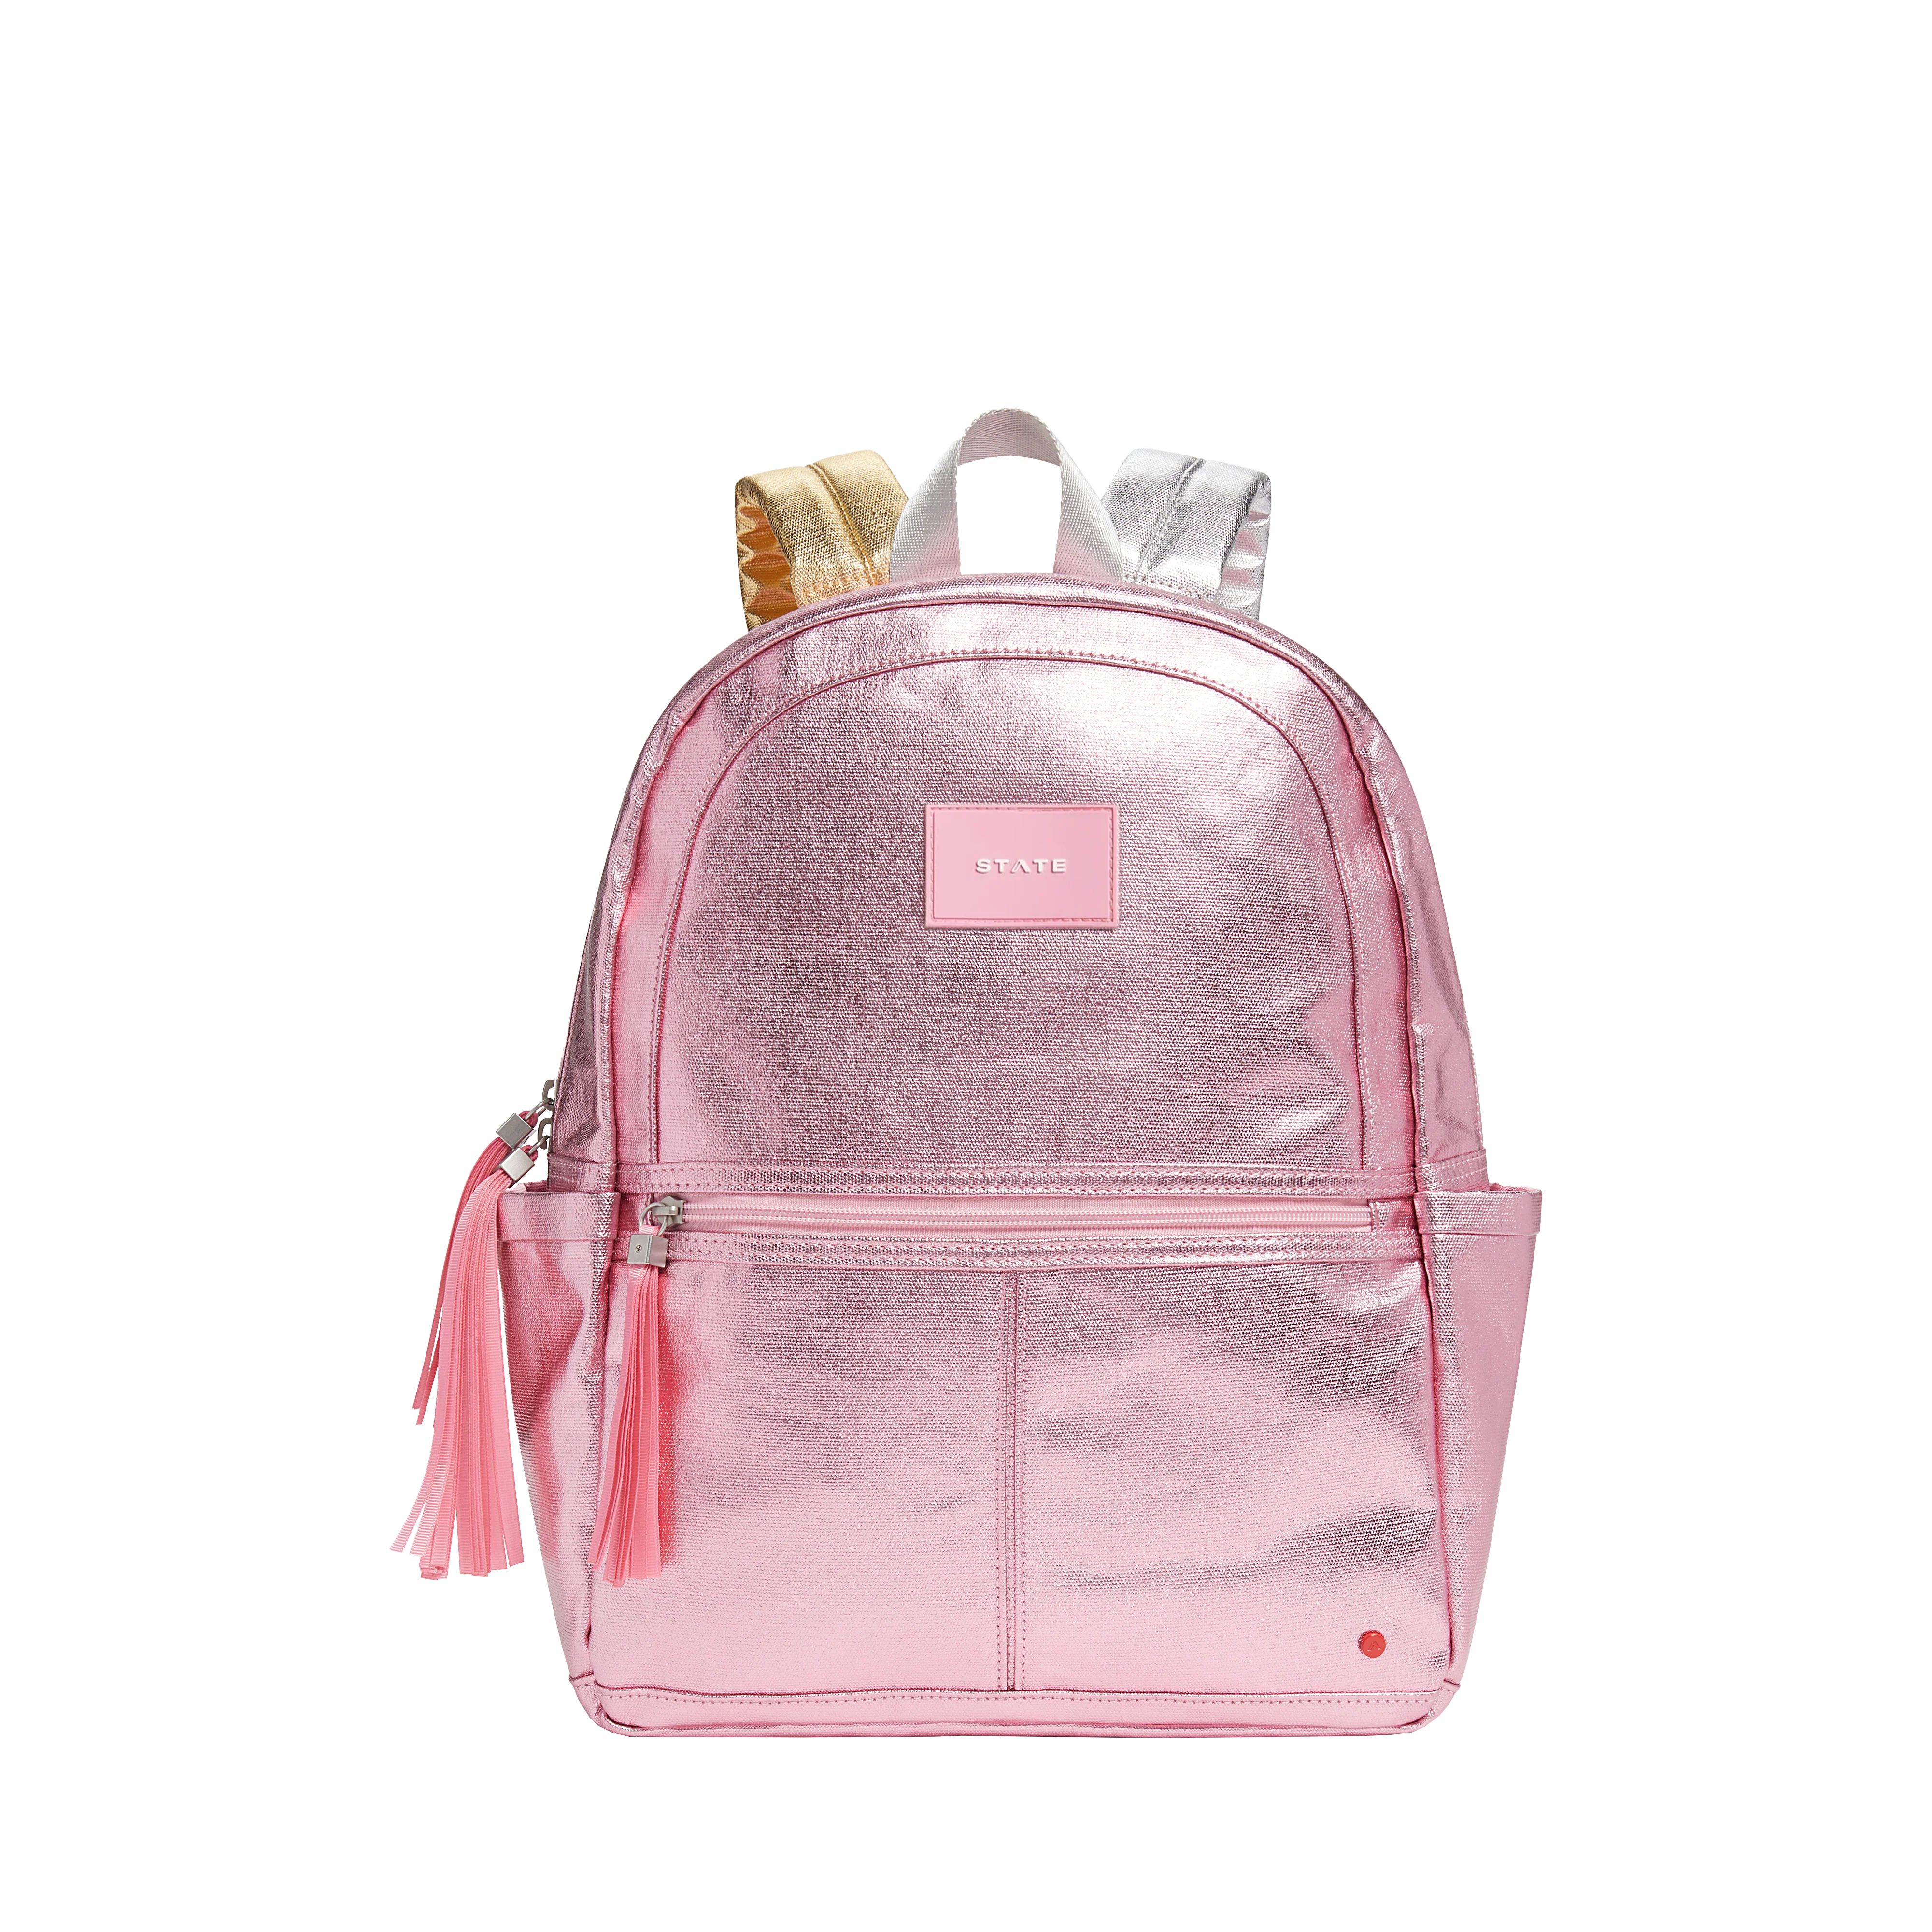 Kane Kids Travel Backpack Metallic Pink/Silver | STATE Bags